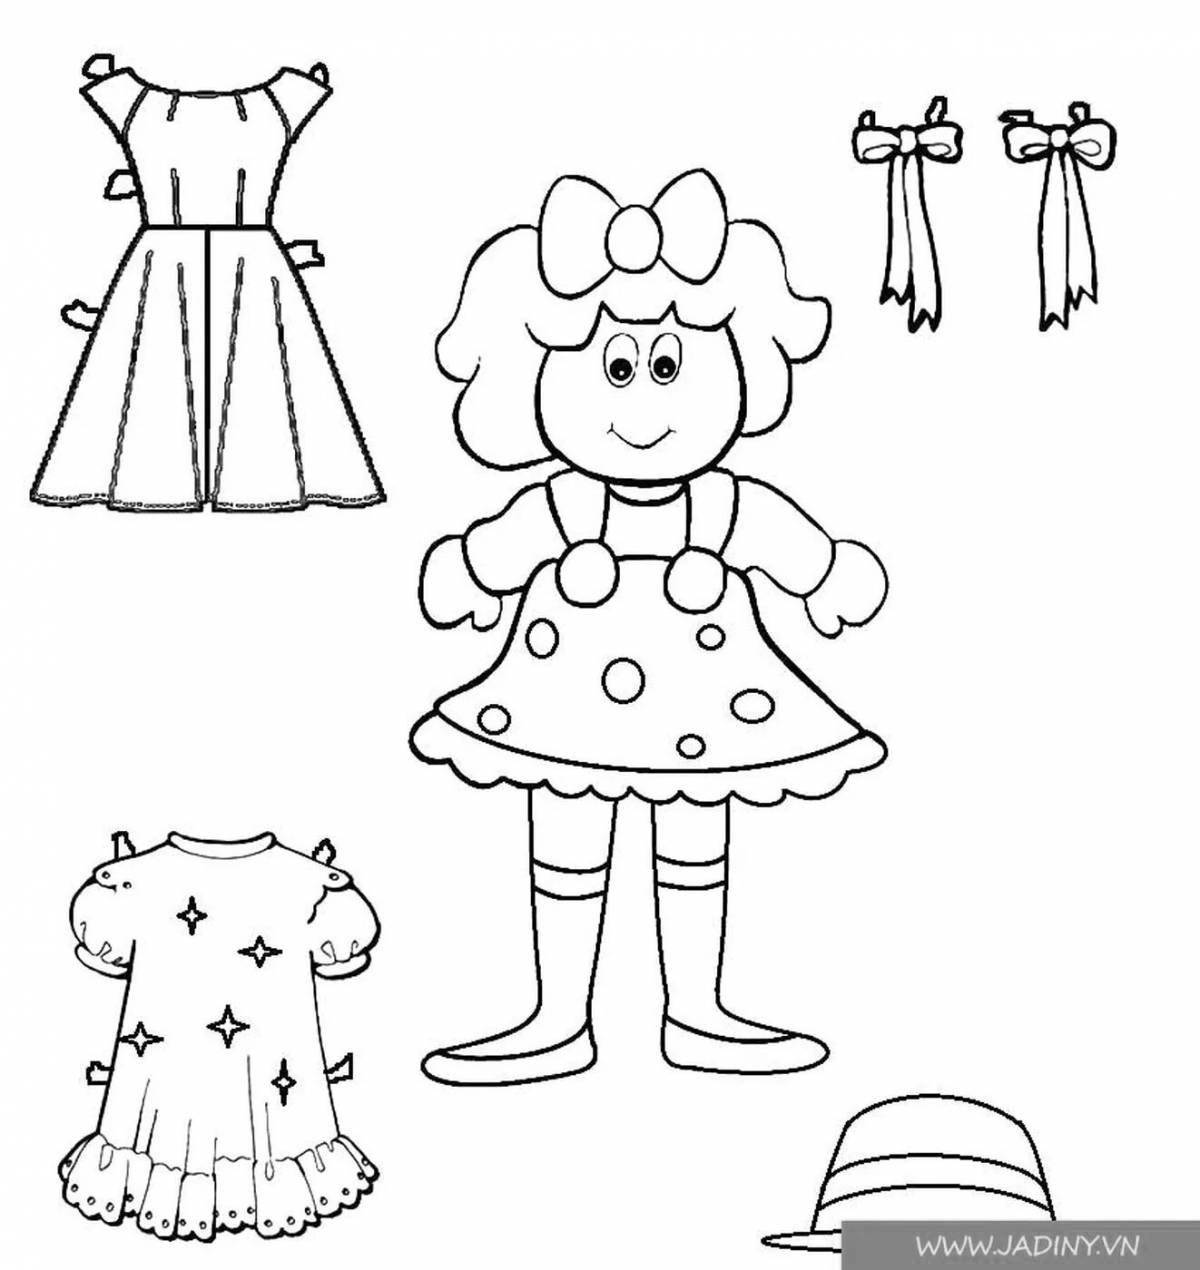 Раскраска сказочное кукольное платье для детей 3-4 лет